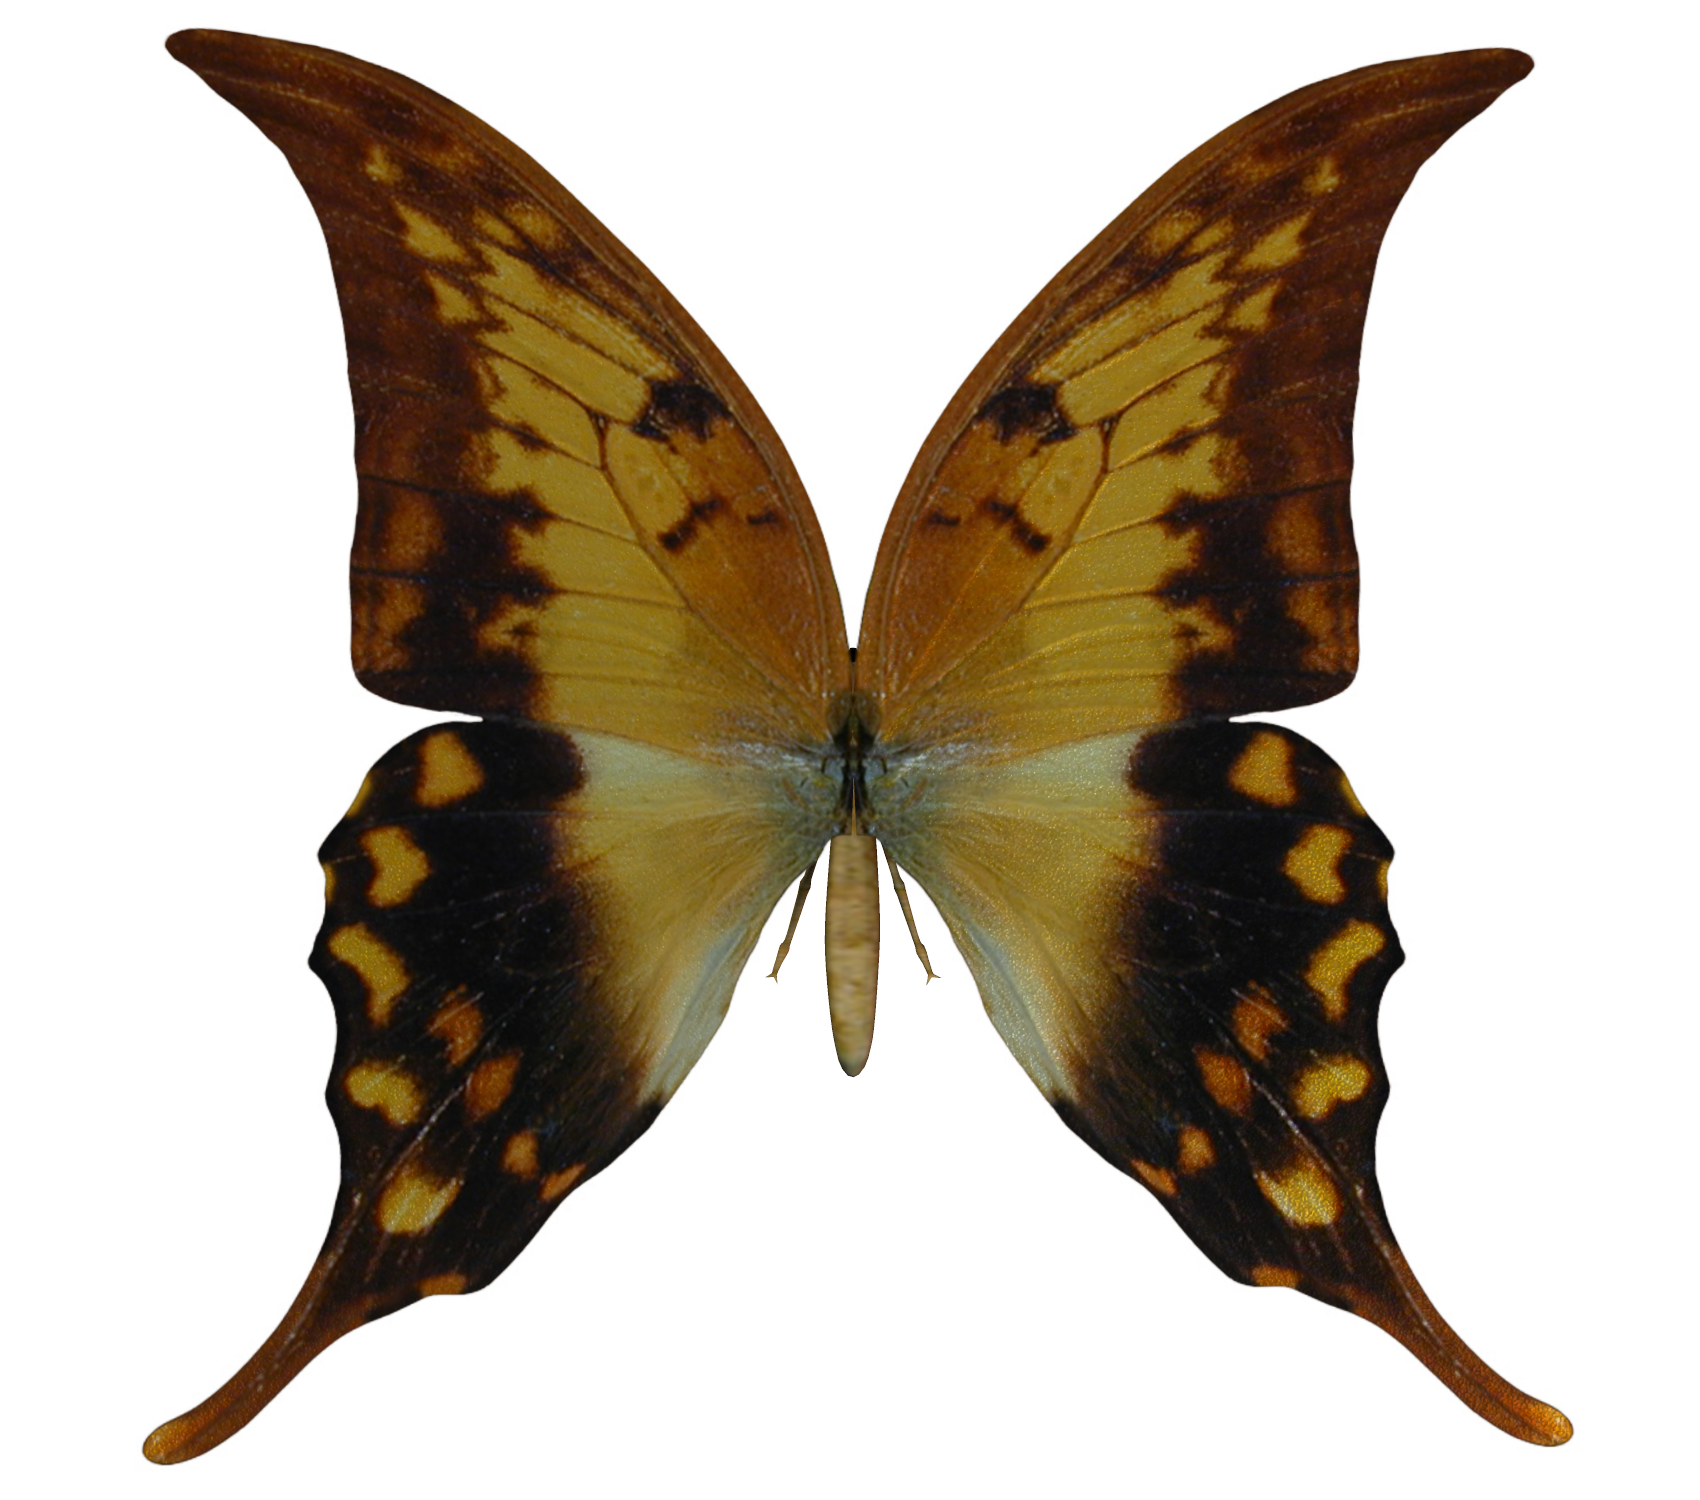 E-S Butterfly VI by Elevit-Stock on DeviantArt